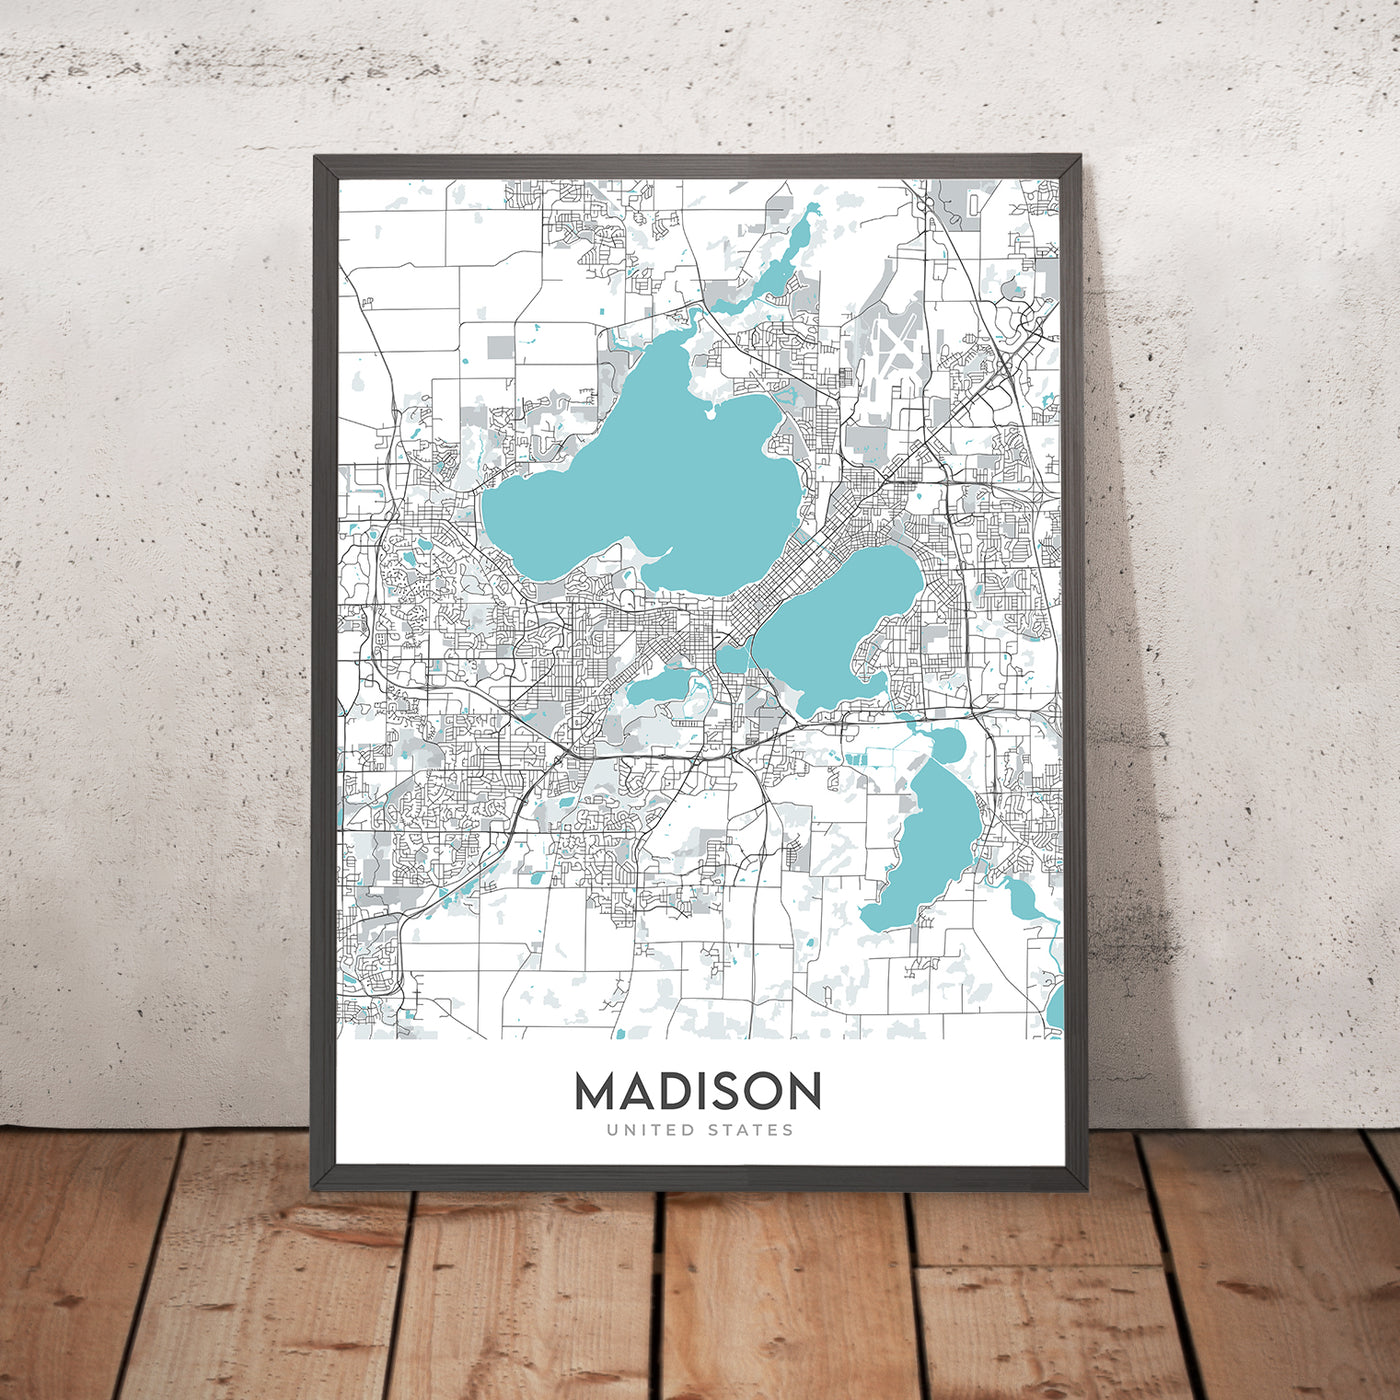 Plan de la ville moderne de Madison, WI : UW-Madison, Capitol, State St, Olbrich Park, Henry Vilas Zoo